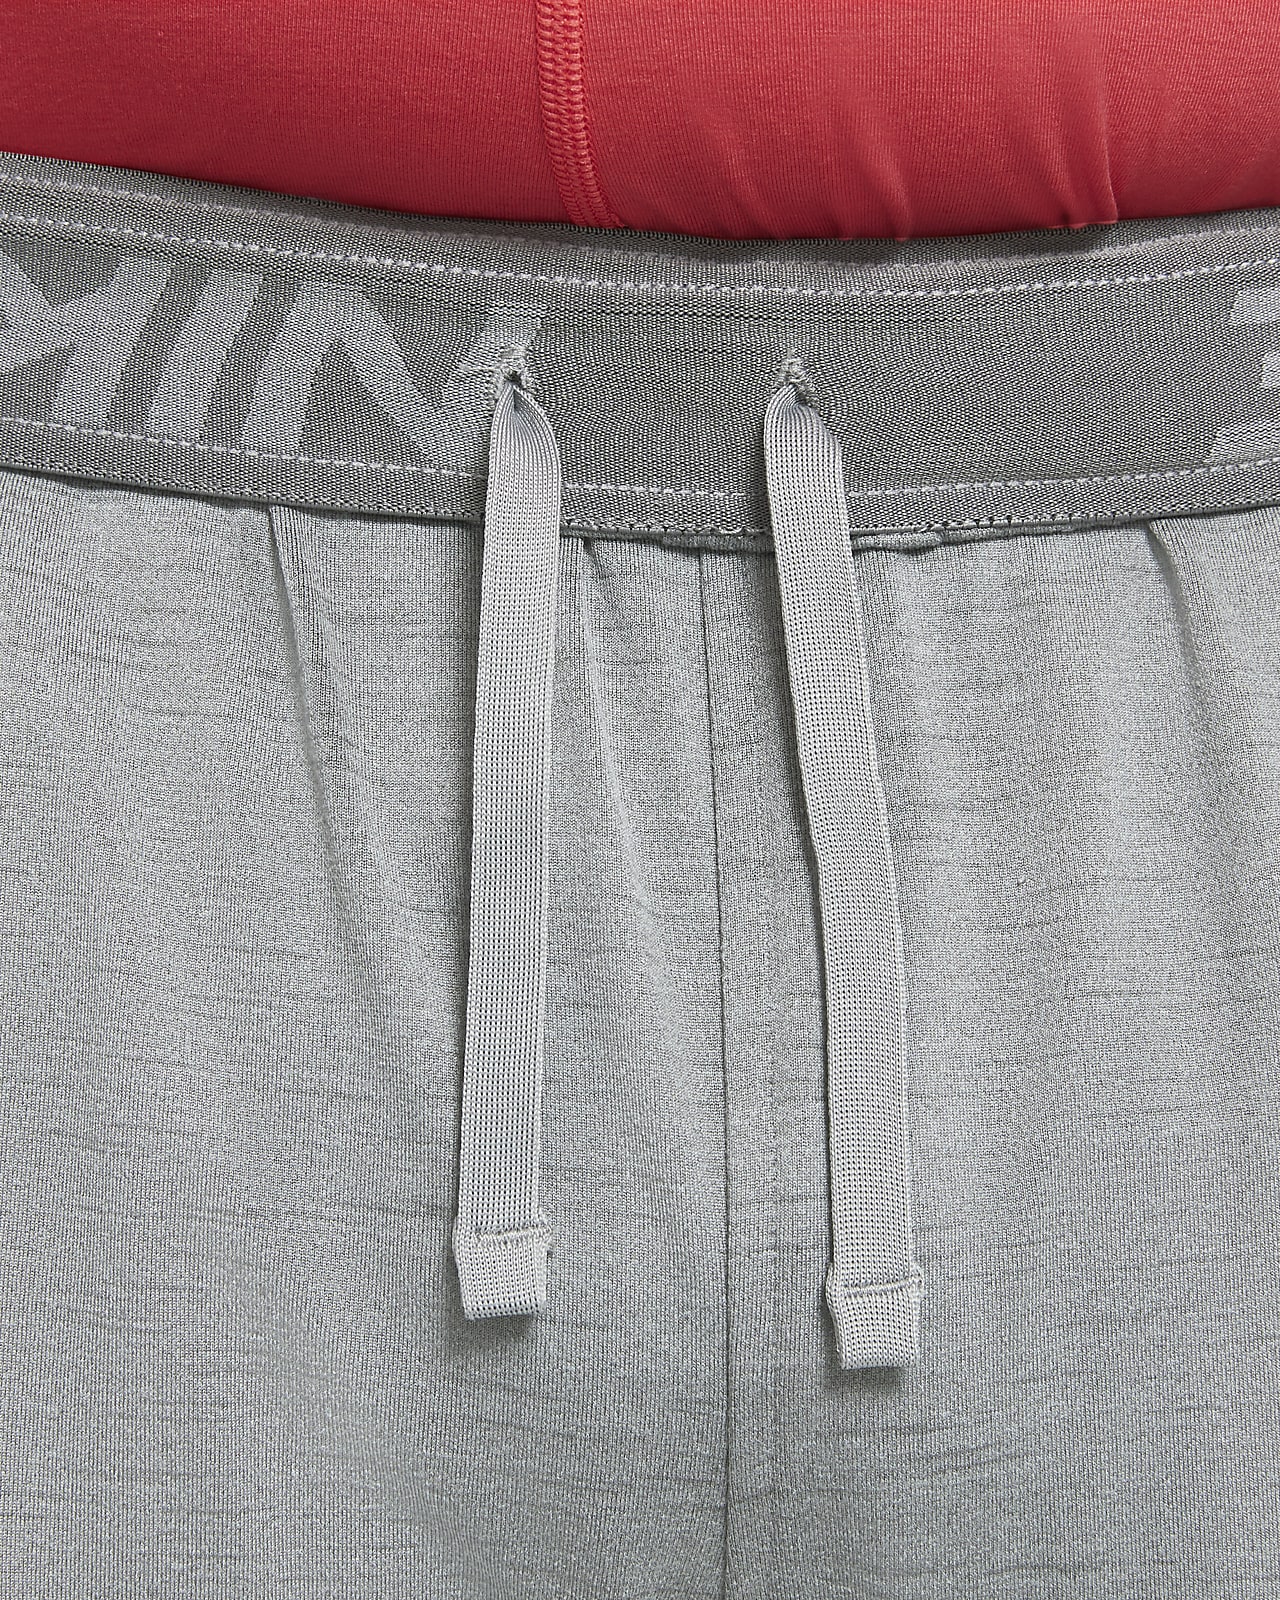 Spodnie Nike Yoga Dri-FIT W DM7037-010 - Profesjonalny Sklep Sportowy 